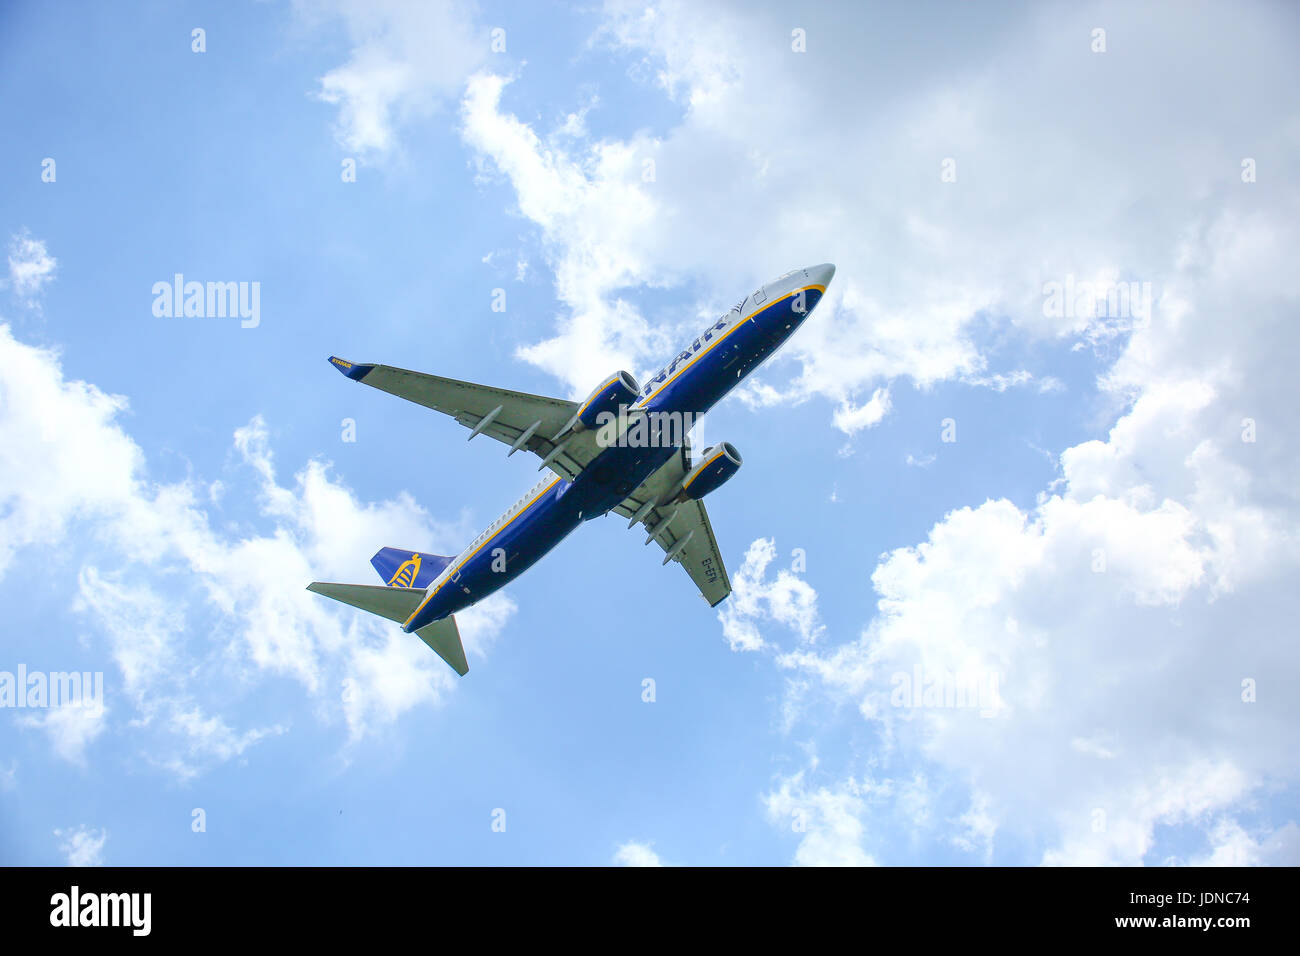 Ryanair aircraft takeoff Stock Photo